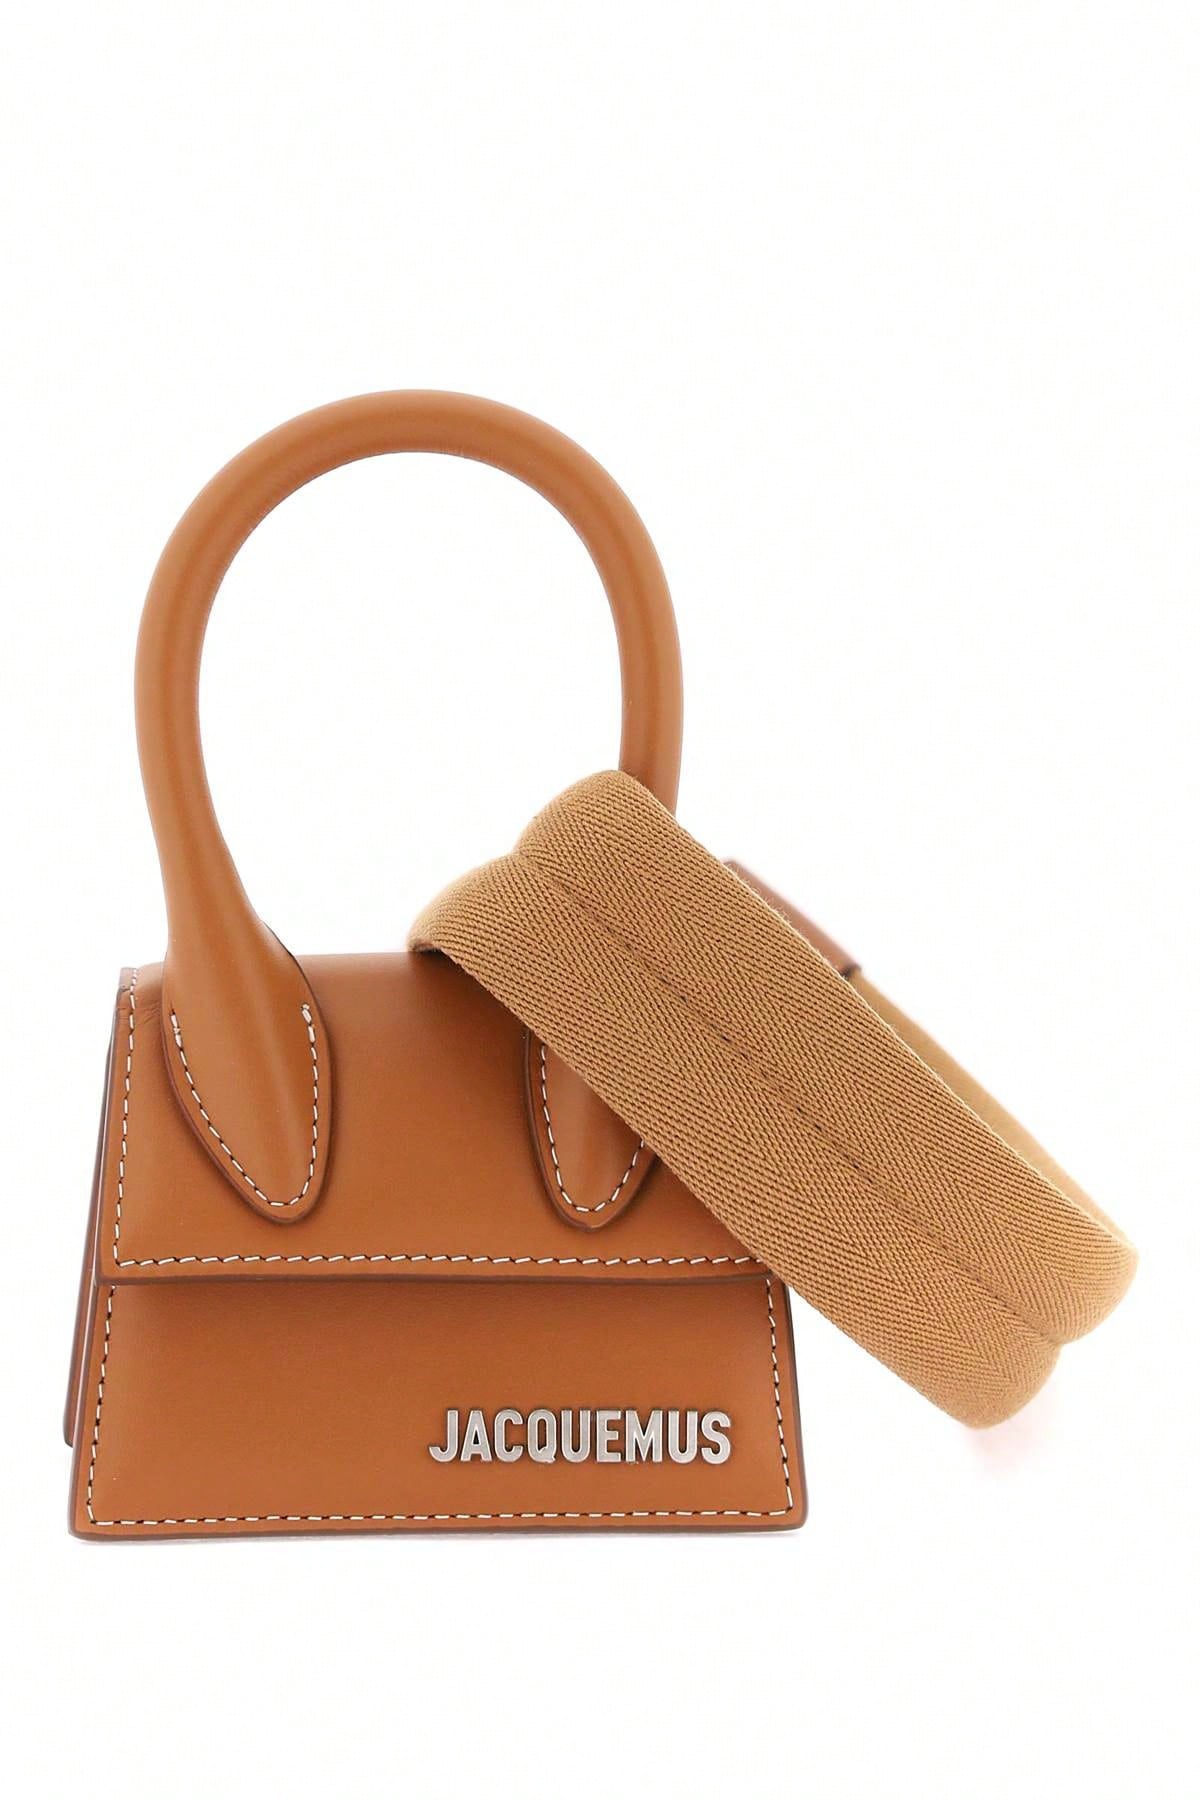 Jacquemus Мини-сумка Jacquemus 'Le Chiquito', черный фотографии